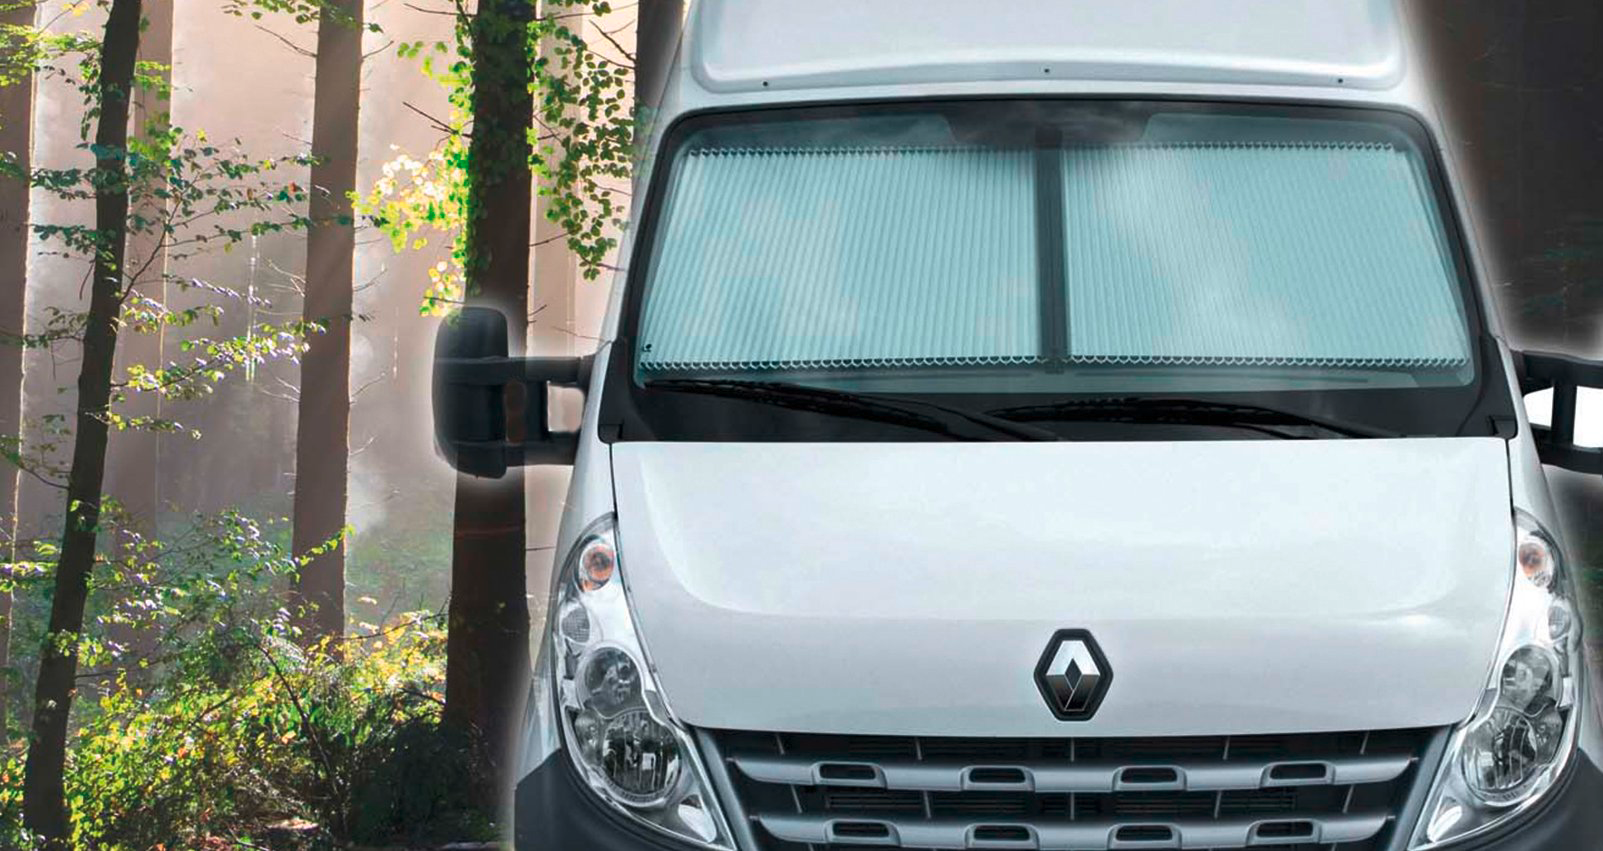 Remis REMIfront vertikales verschließbare Fahrerhausverdunkelung für IV Renault Master 2011 - Q3 / 2019  grau / hellbeige